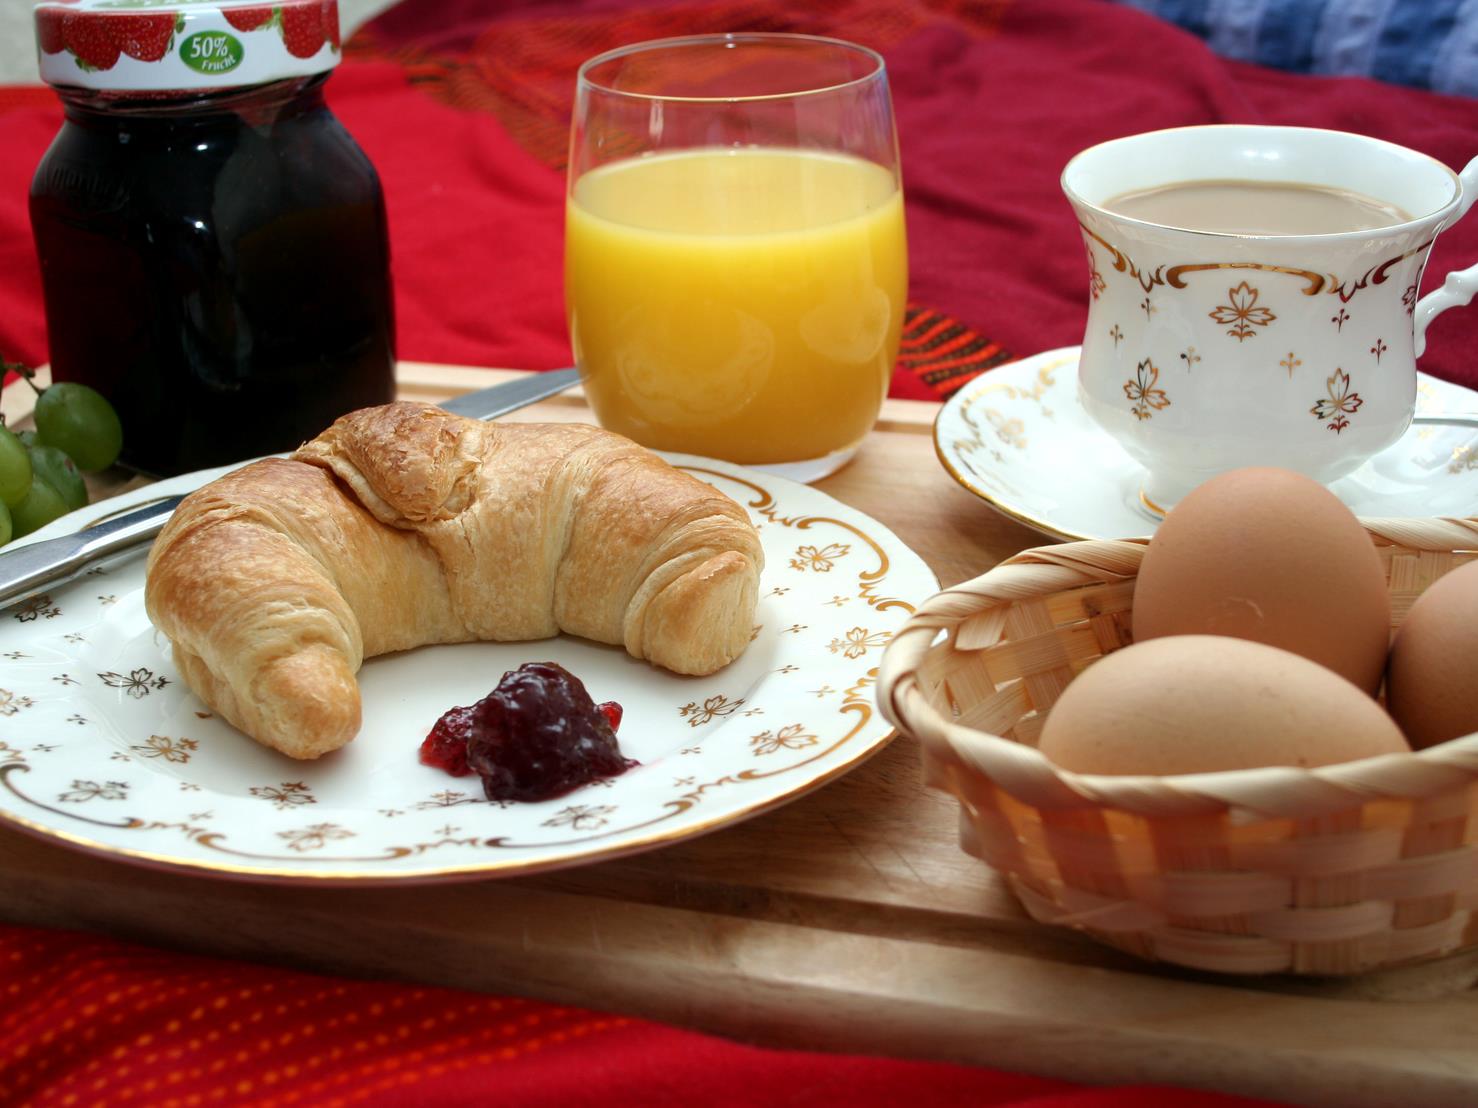 Frühstück, frühstücken, Croisson, Eier, Kaffee, Saft, Orangensaft, Marmelade, essen, Weintrauben, Hörnchen, Butterhörnchen